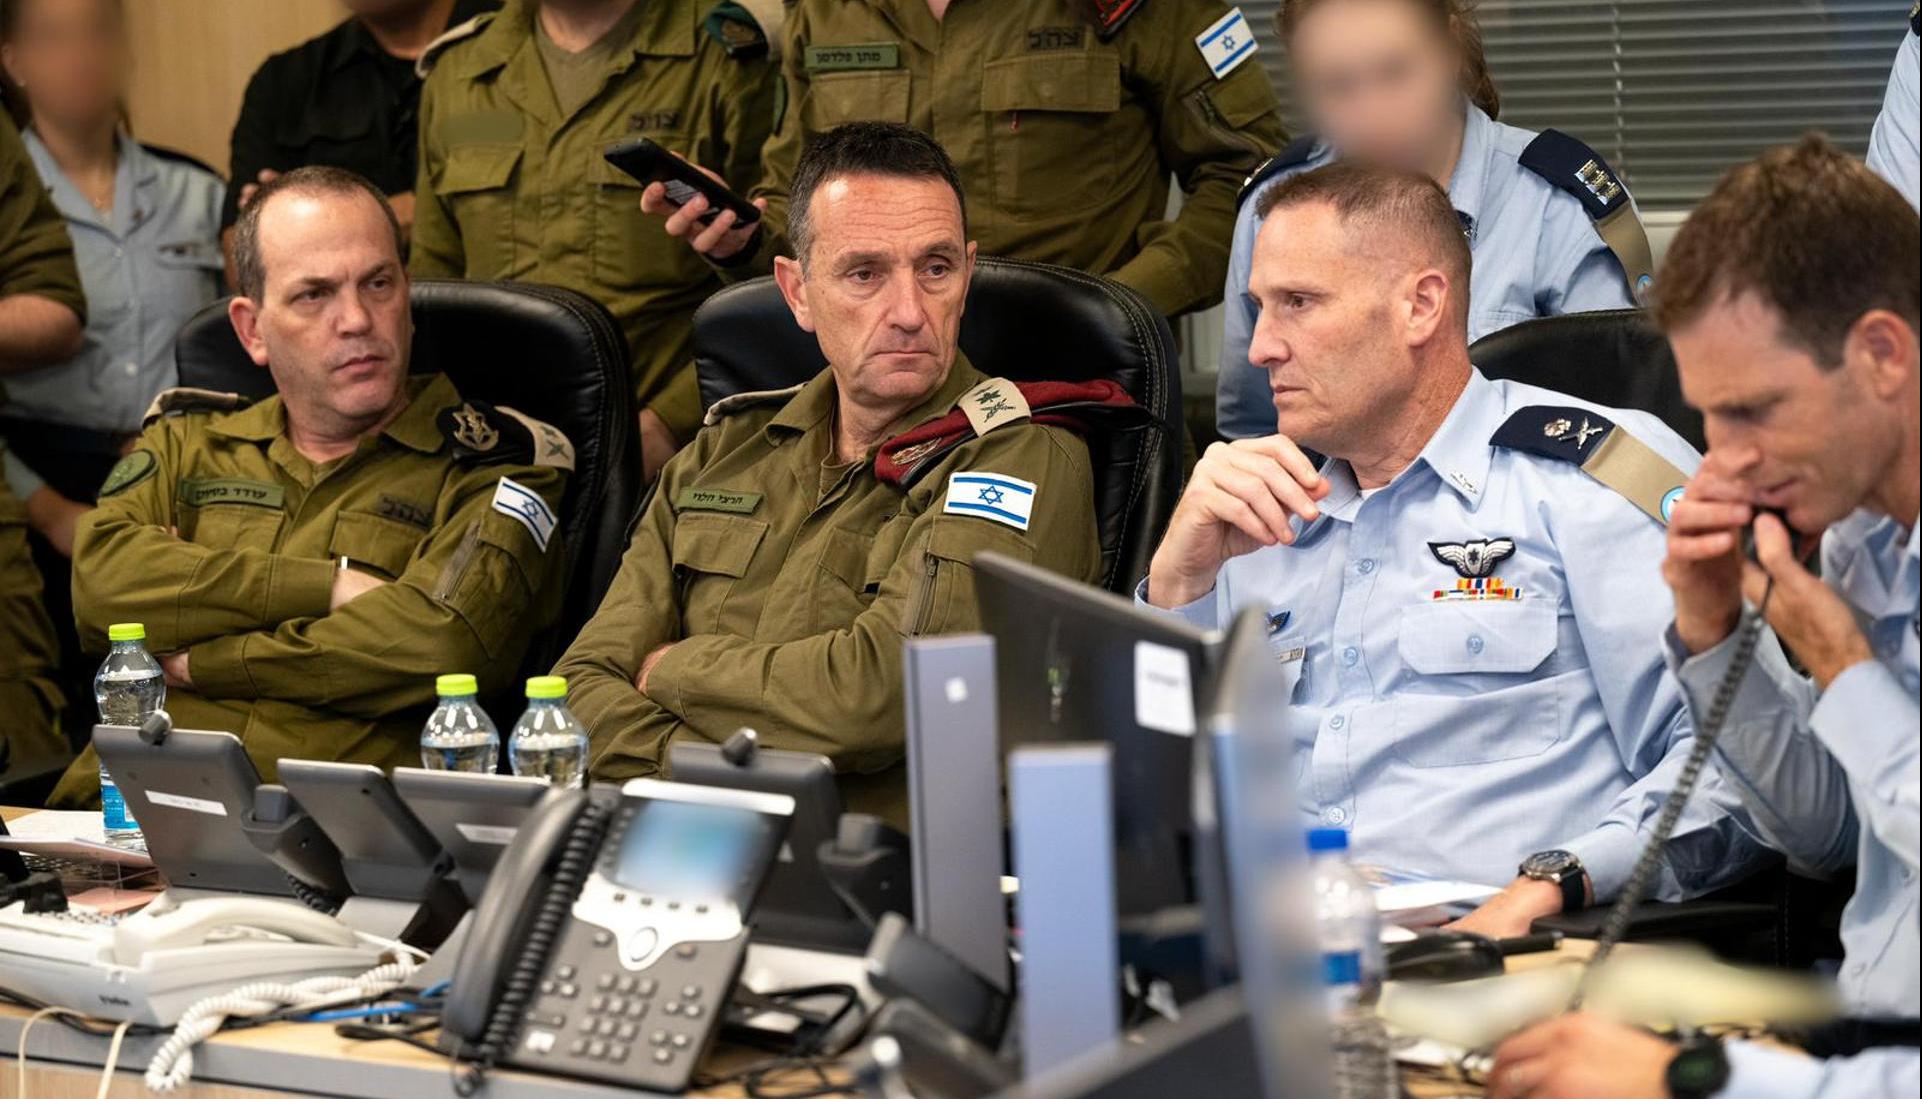 El jefe del Estado Mayor del Ejército de Israel, Herzi Halevi (2i), y el mayor general de las Fuerzas Aéreas de Israel, Tomer Bar